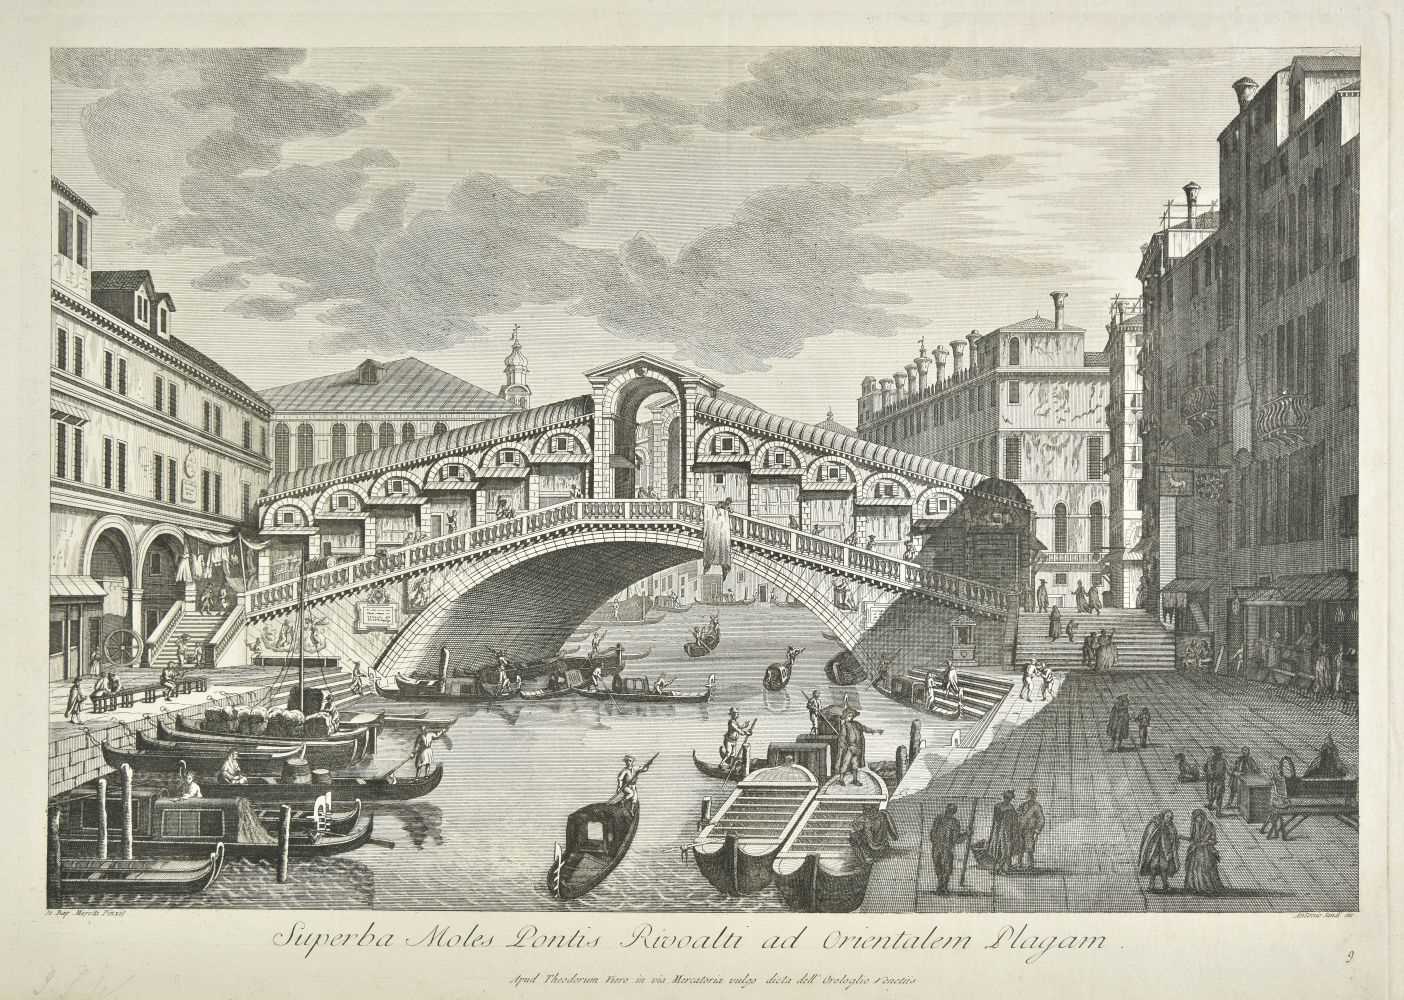 Lot 231 - Canaletto (Giovanni Antonio, 1697-1768). Five views of Venice, circa 1780s